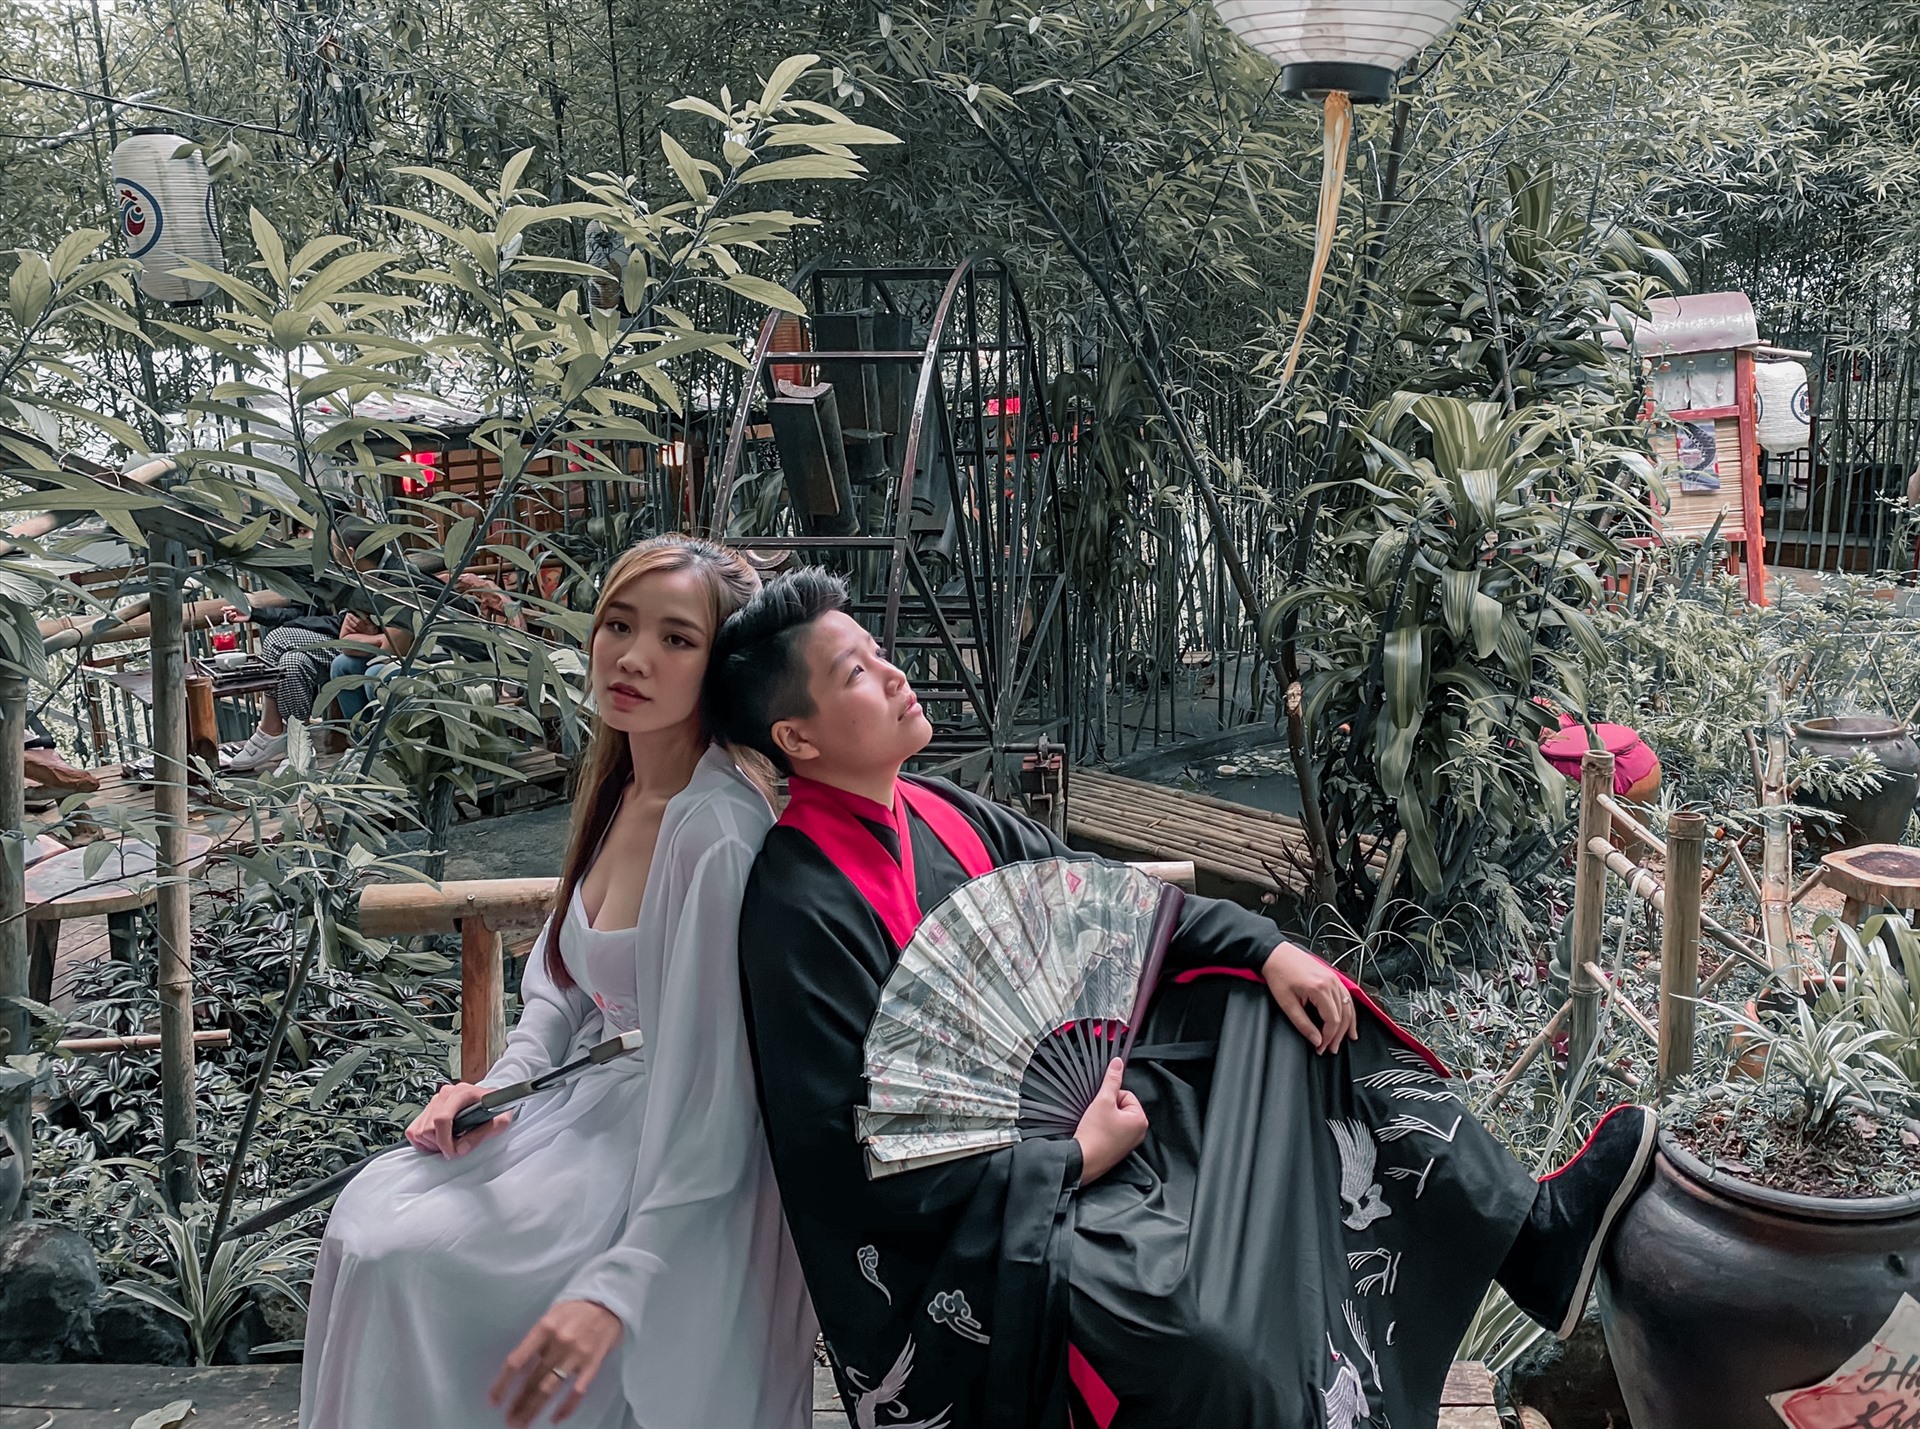 Yunbin và người vợ của anh ta đã tạo ra một bộ ảnh cưới đẹp như một giấc mơ. Không gian thiên nhiên và sự say mê của hai người đã được tái hiện với điểm nhấn là bộ trang phục lộng lẫy và quyến rũ.